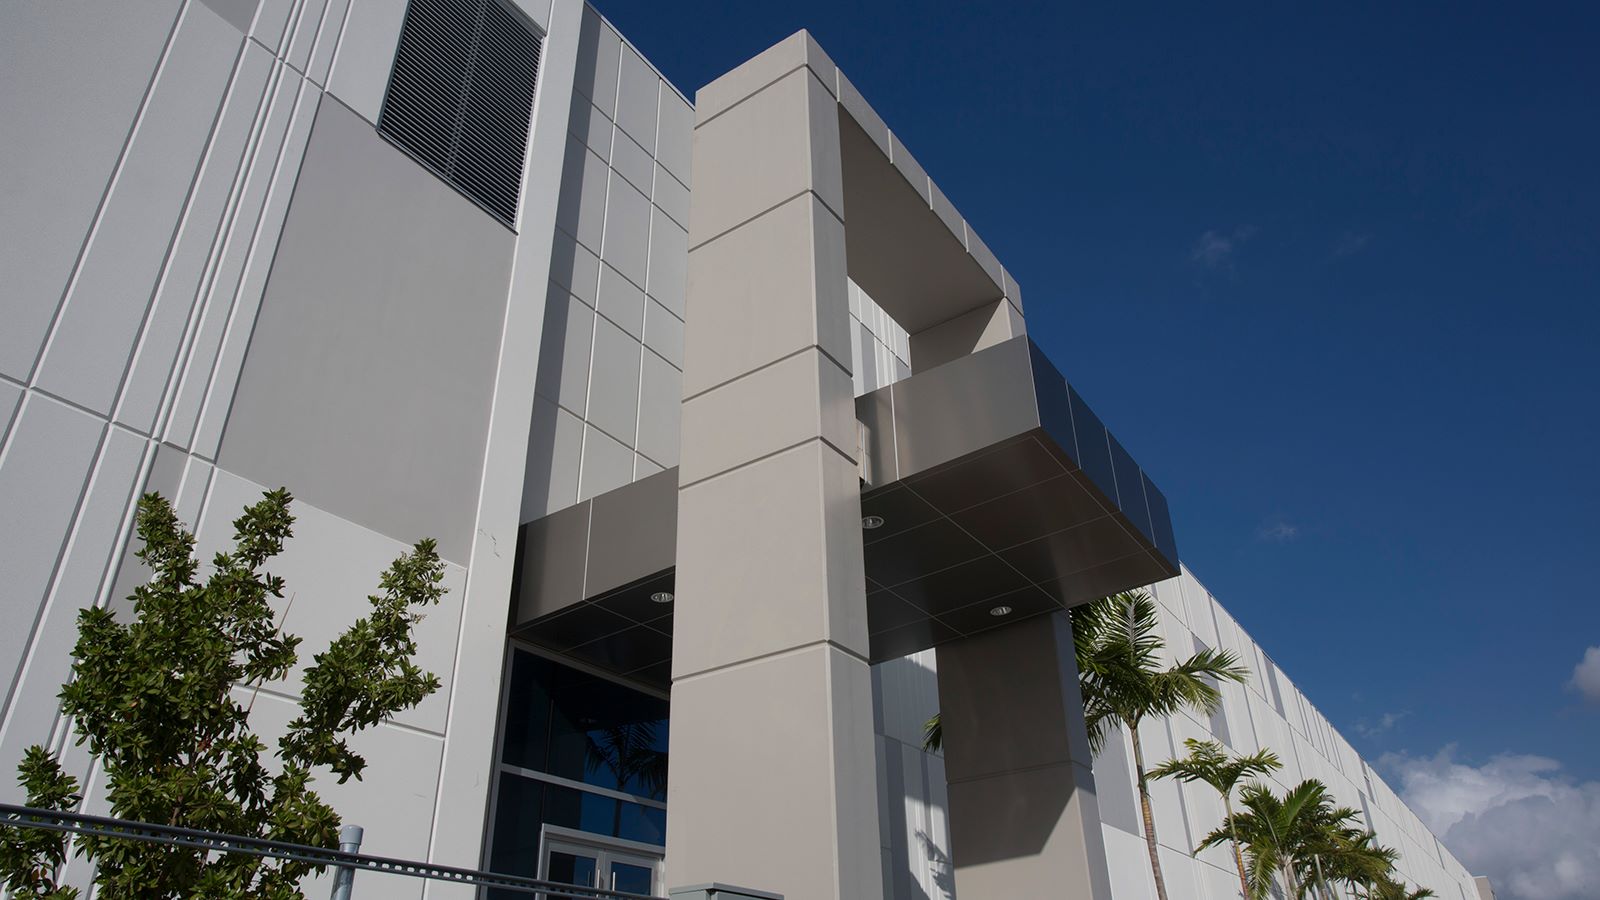 Telemundo Collaborative Campus Building in Miami - Mace Group